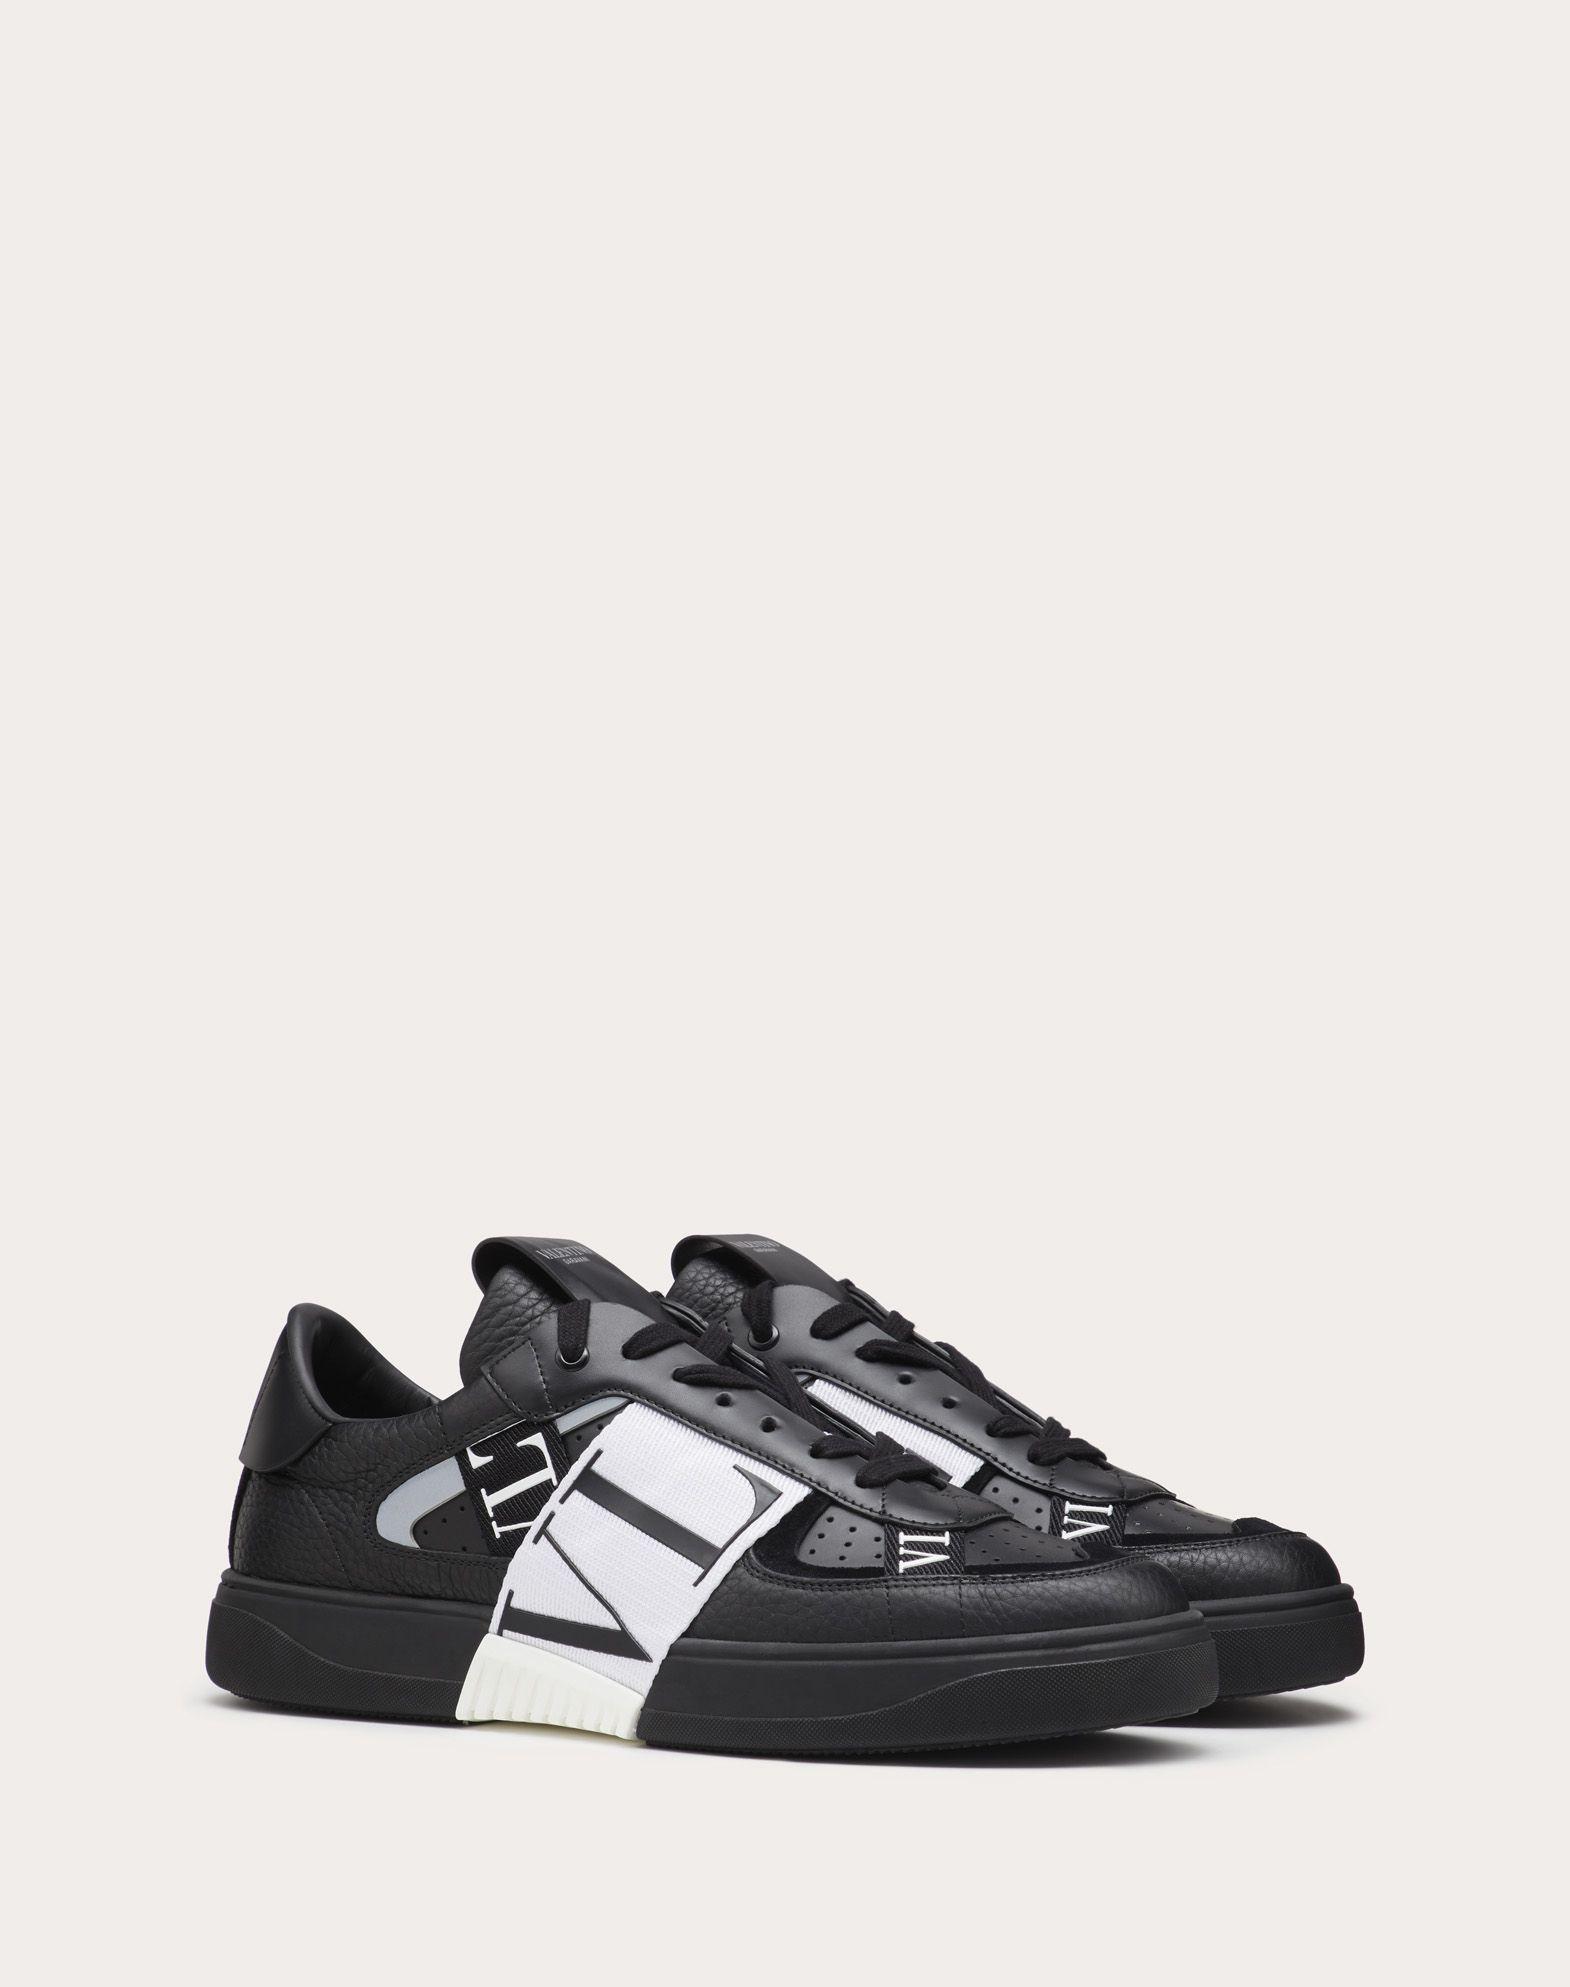 Valentino Garavani Rubber Vl7n Banded Sneakers in Nero (Black) for 